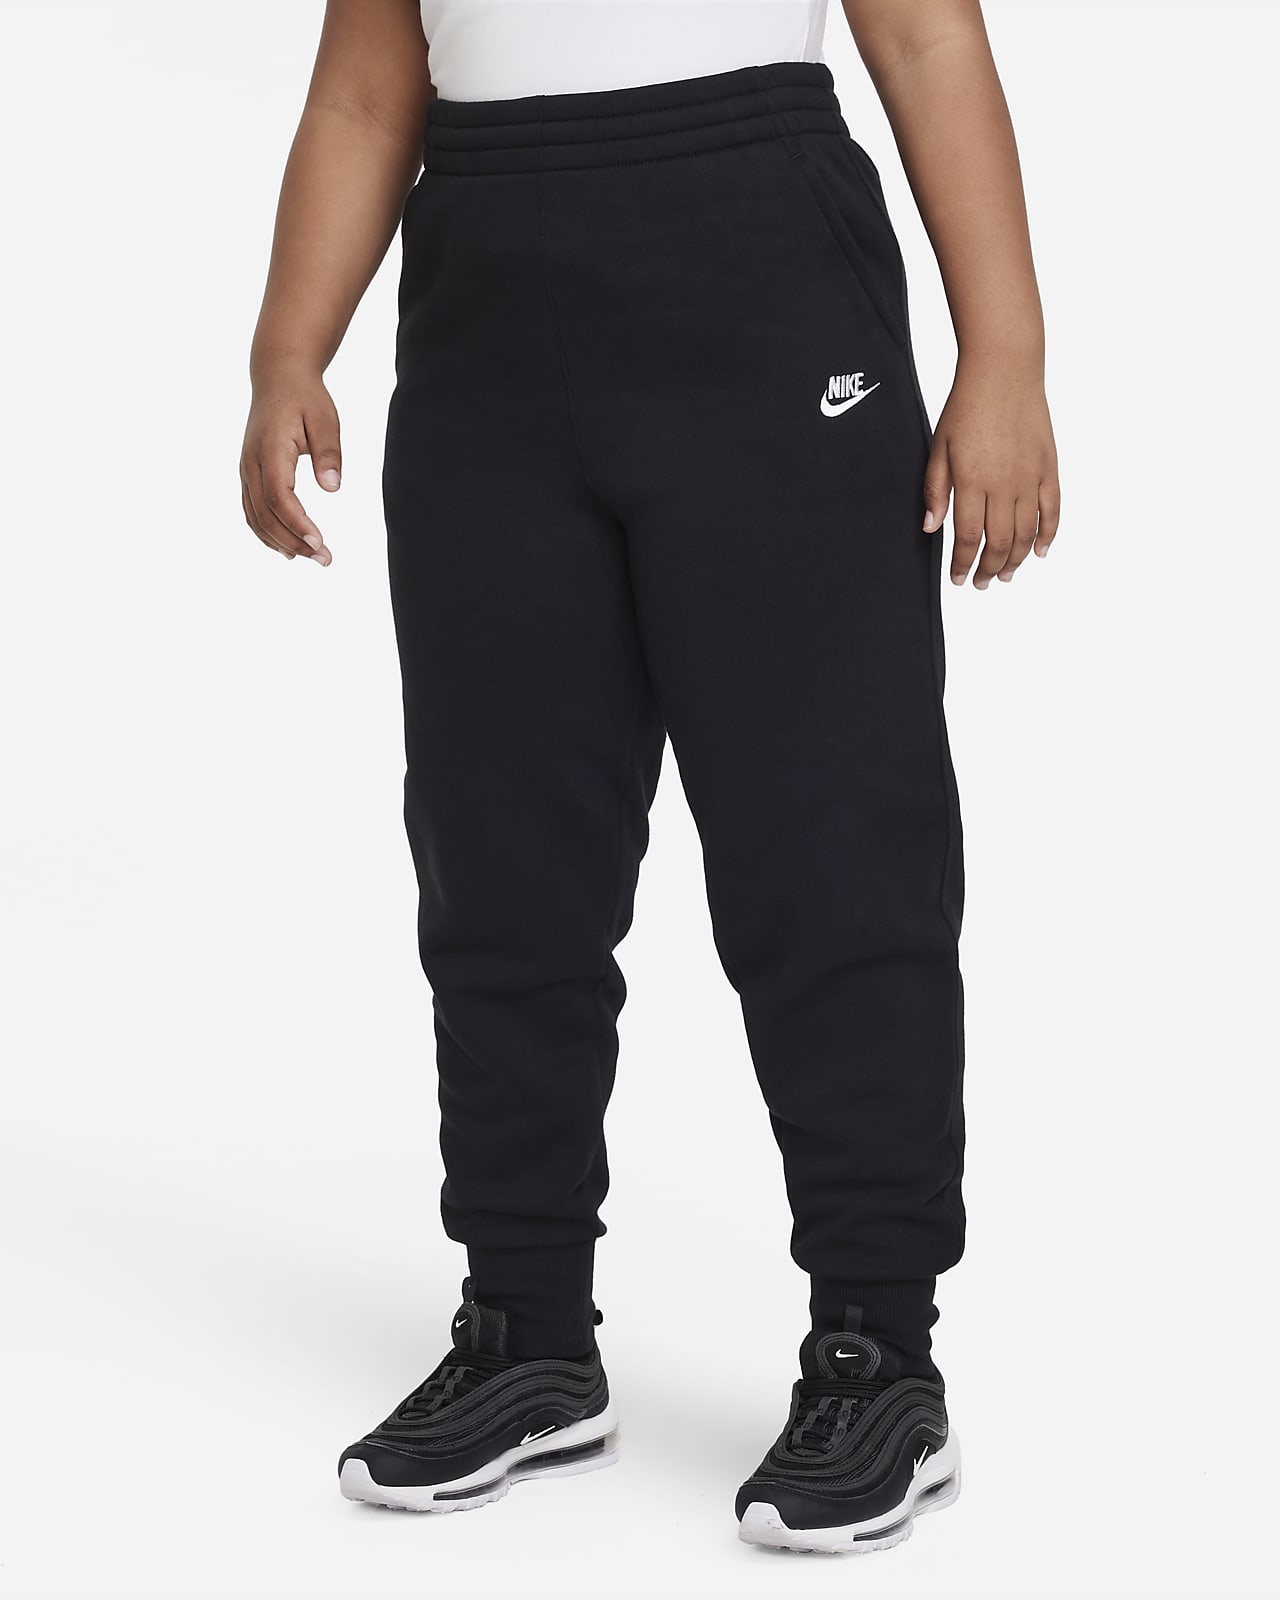 Nike Sportswear Club Fleece passgenaue Hose mit hohem Taillenbund für ältere Kinder (Mädchen) (große Größe)